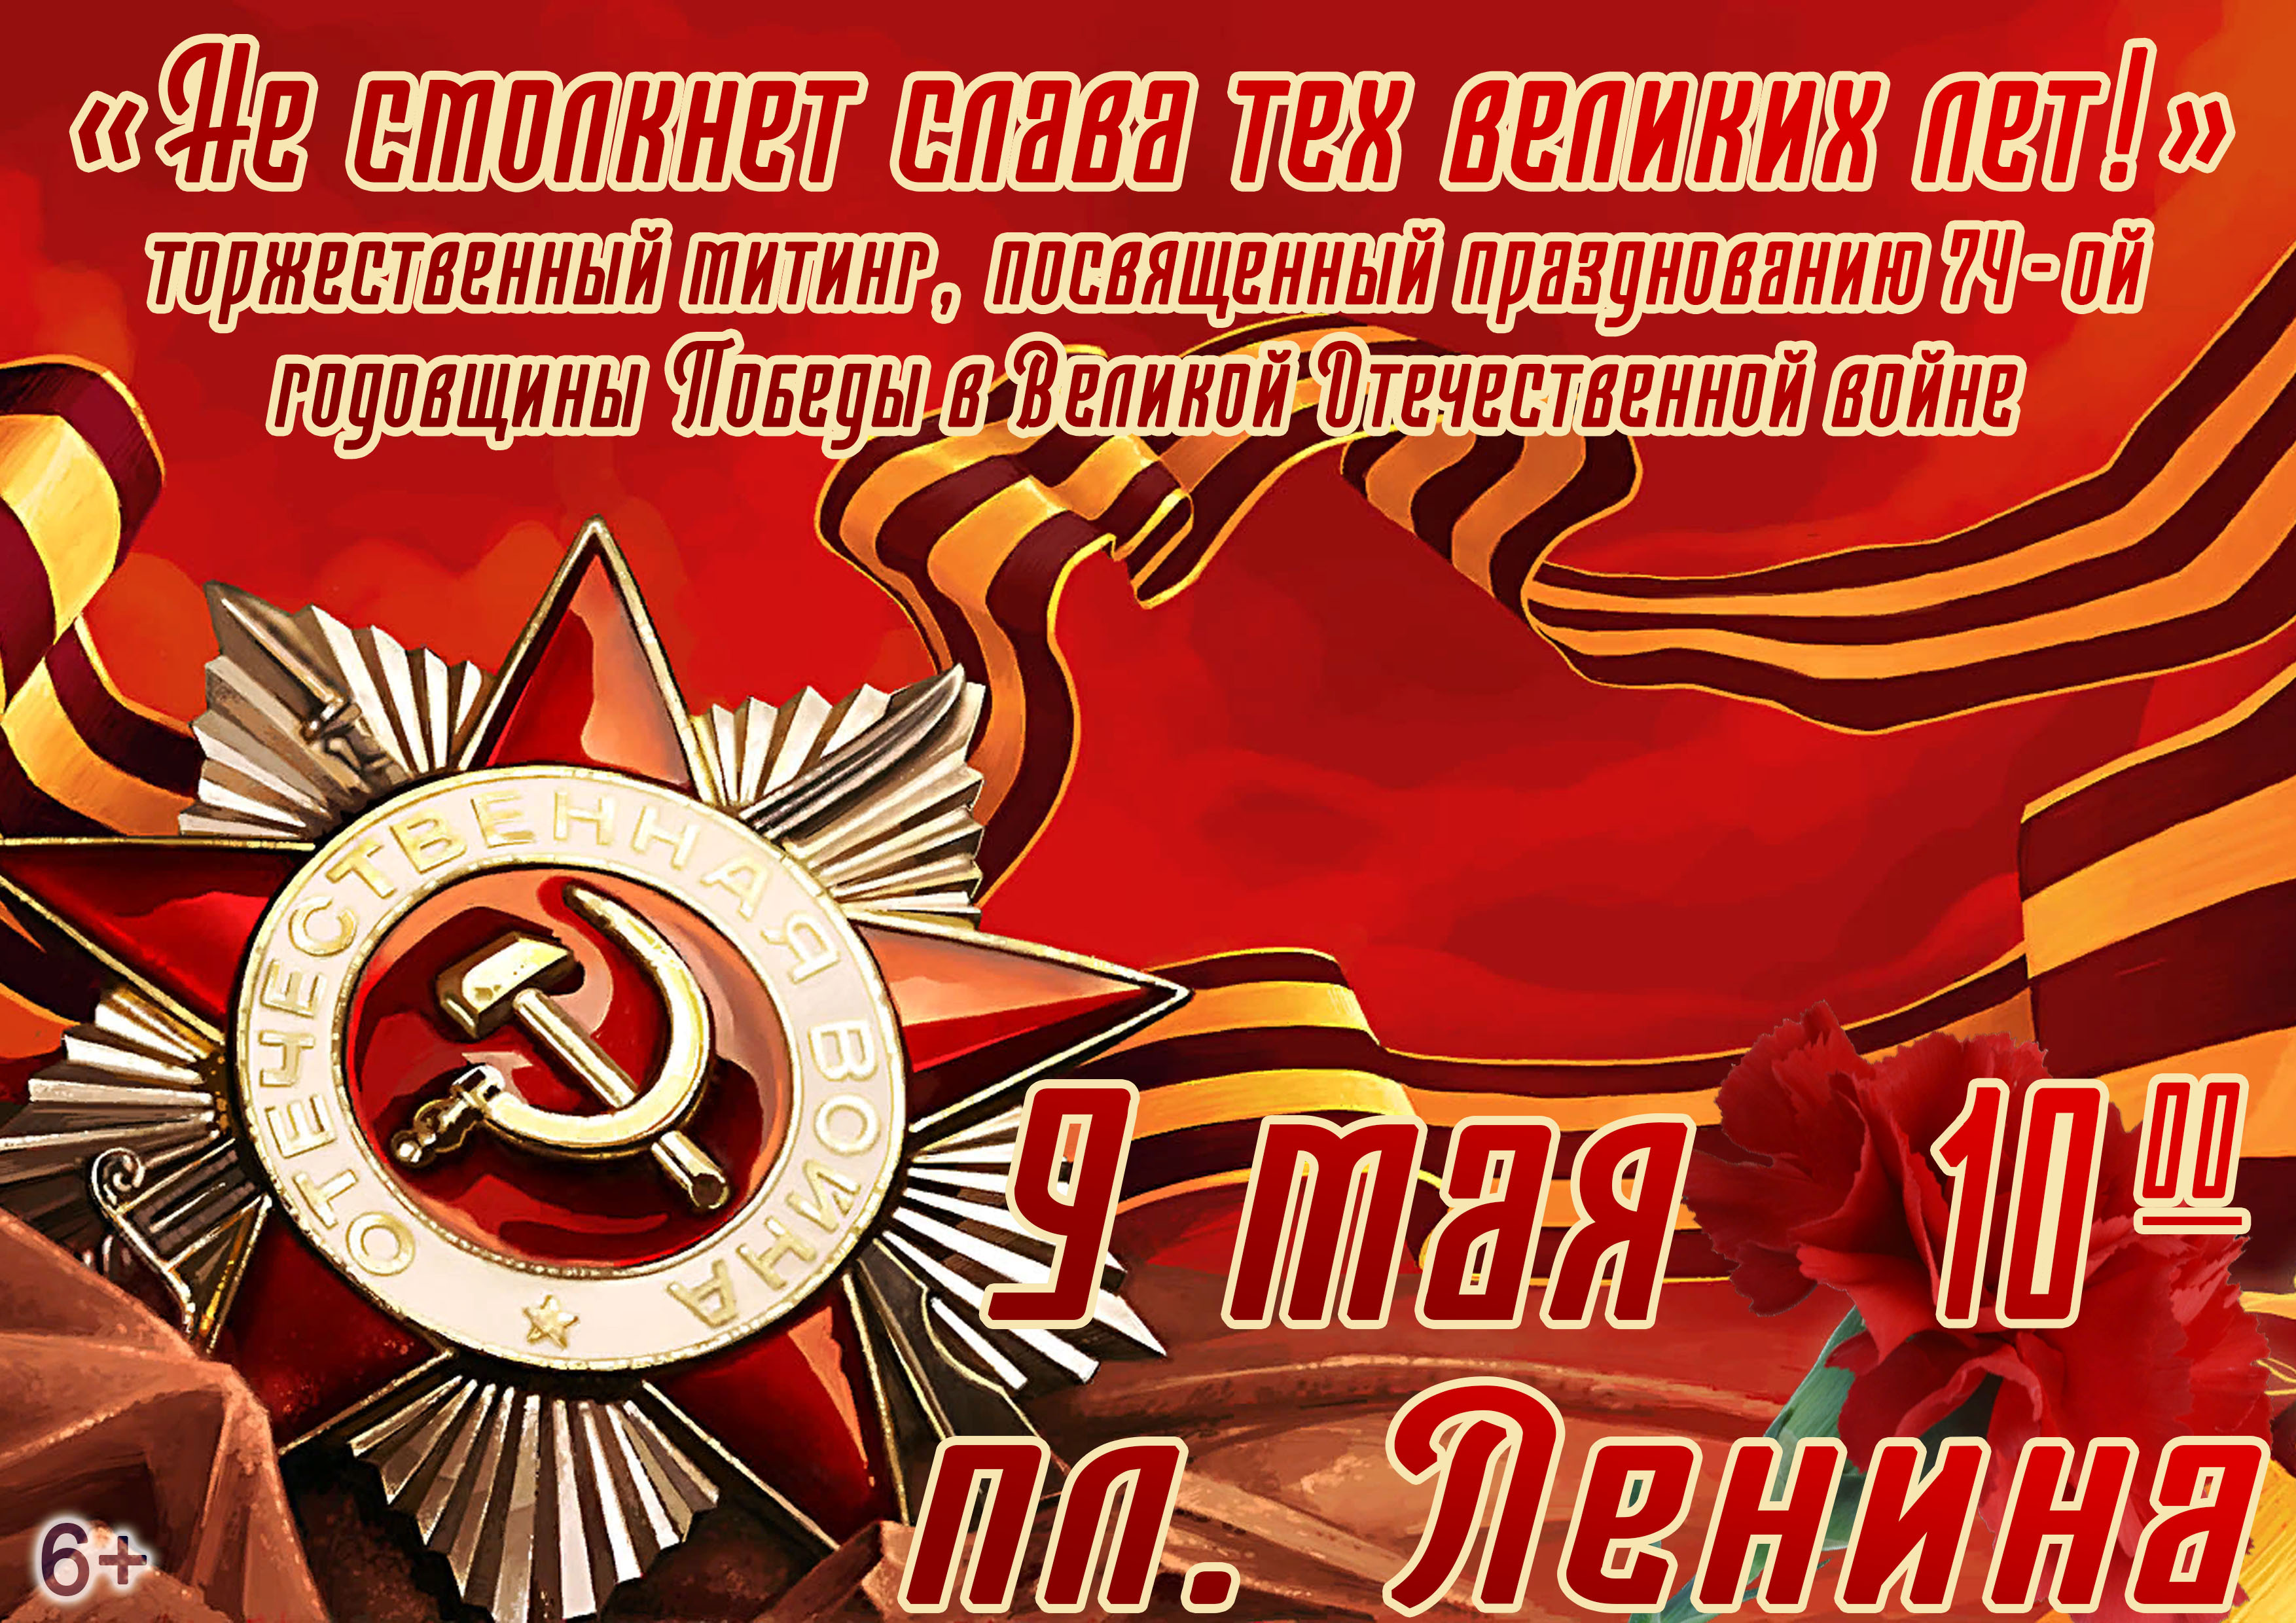 «Не смолкнет слава тех великих лет!» – митинг, посвященный празднованию 74 годовщине Победы в Великой Отечественной войне.